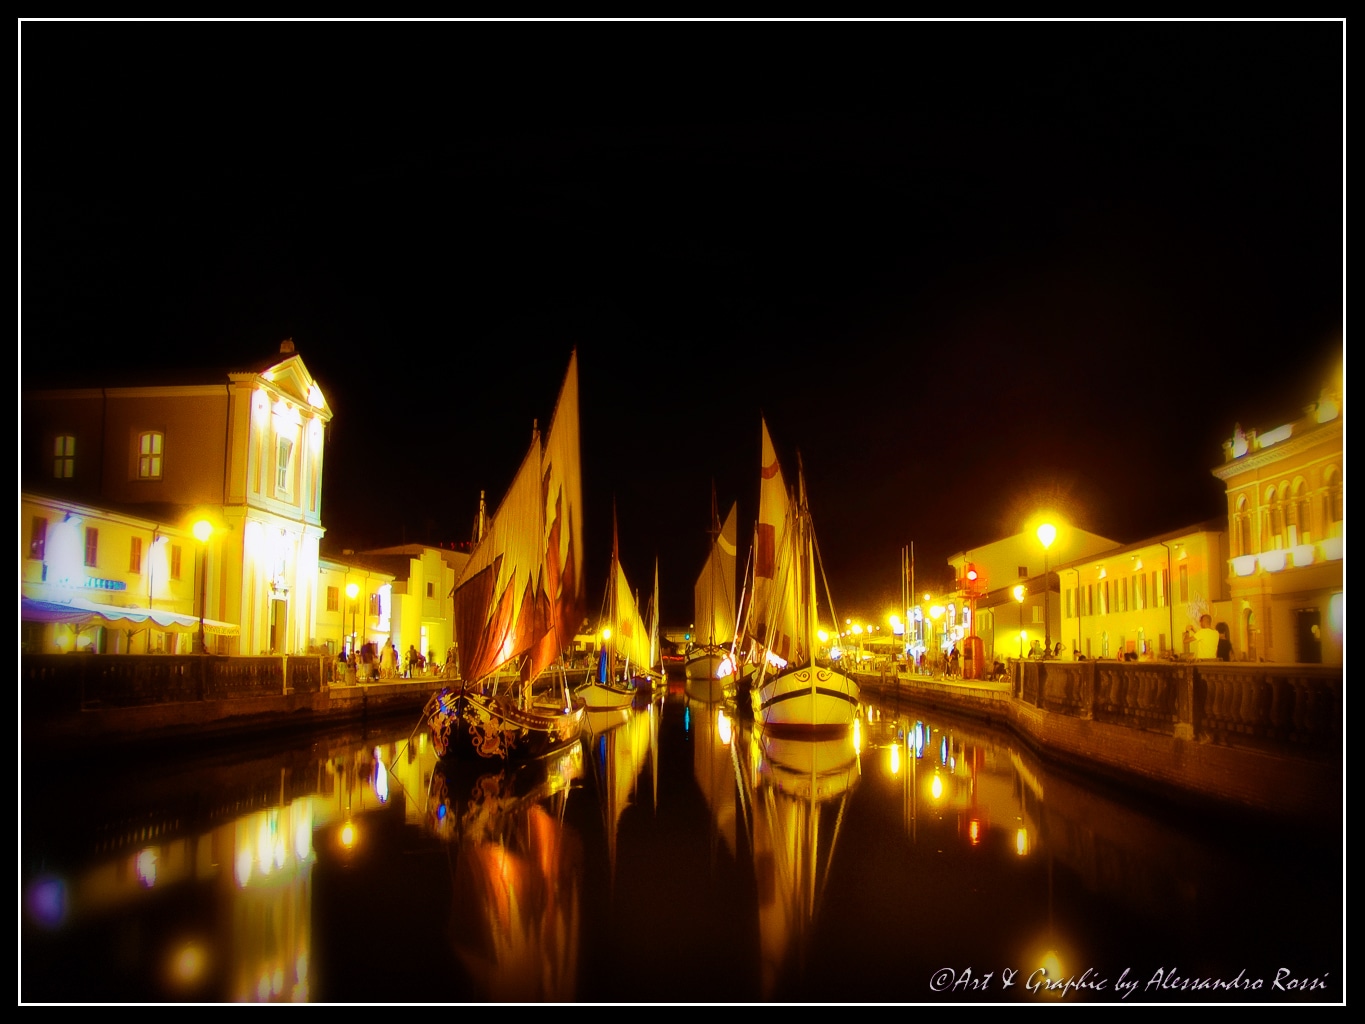 Boats in the Night - Cesenatico